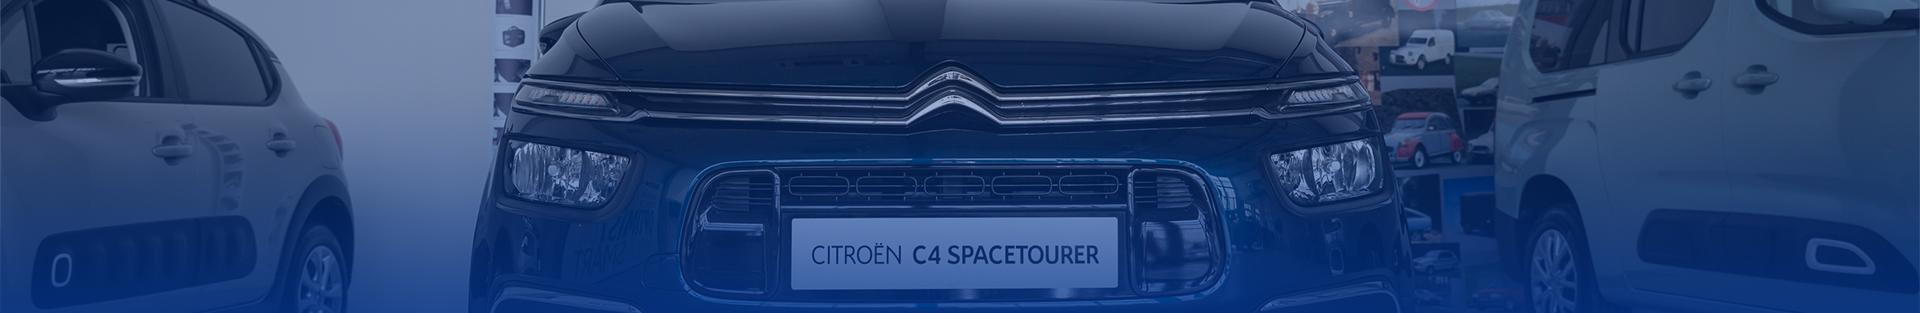 Přehled modelů osobních vozů značky Citroën